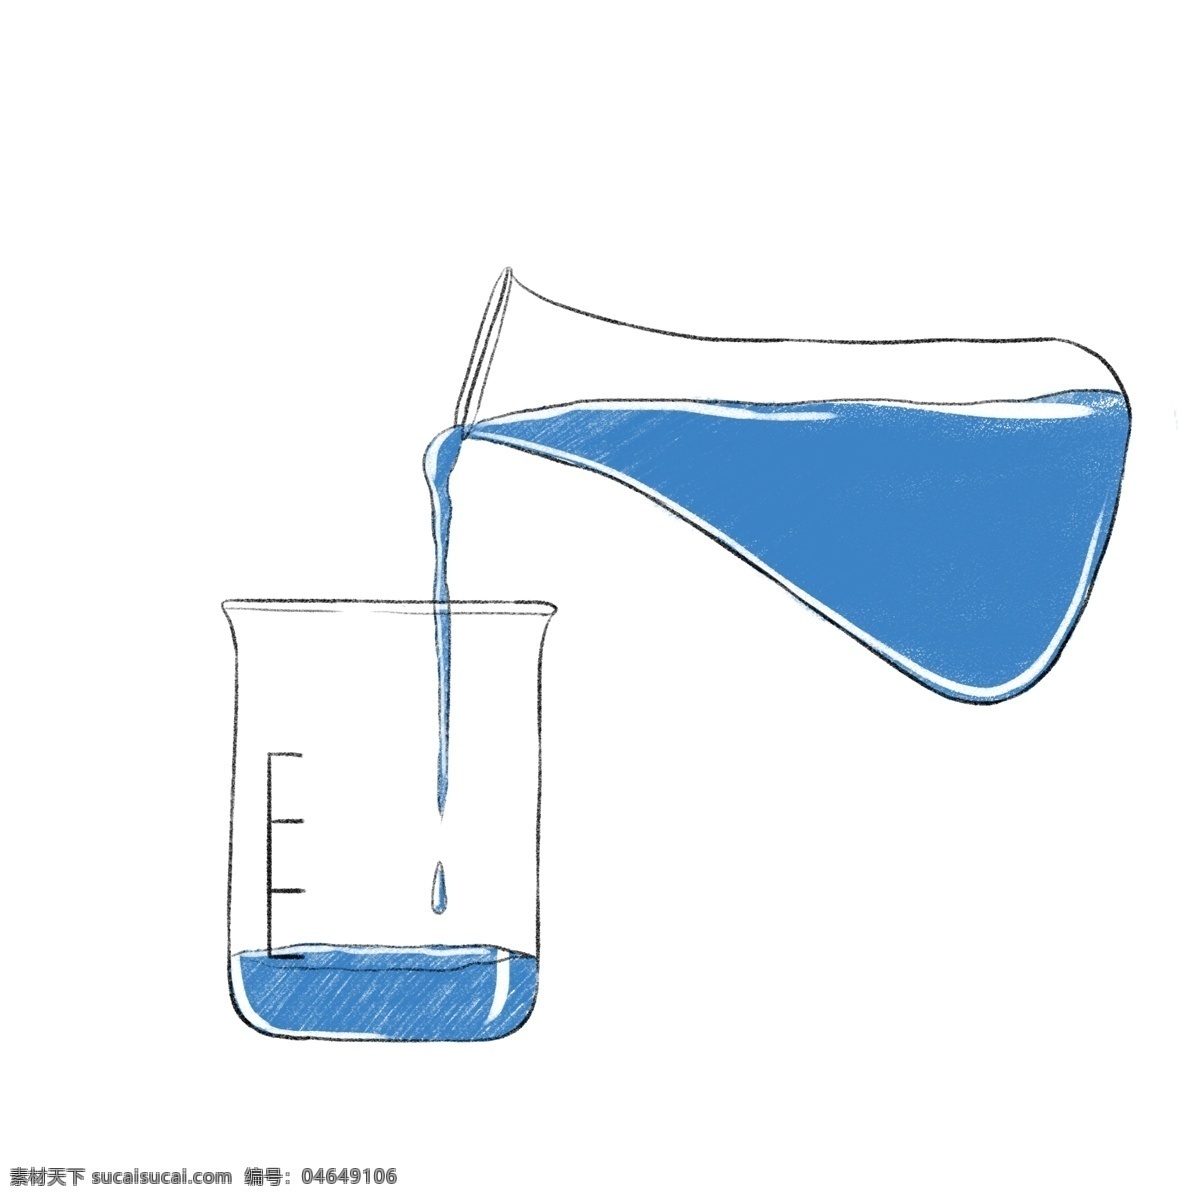 卡通 白色 化学 烧杯 插图 立体烧杯 白色烧杯 蓝色液体 实验用品 化学实验 生物技术 文化水平 玻璃容器